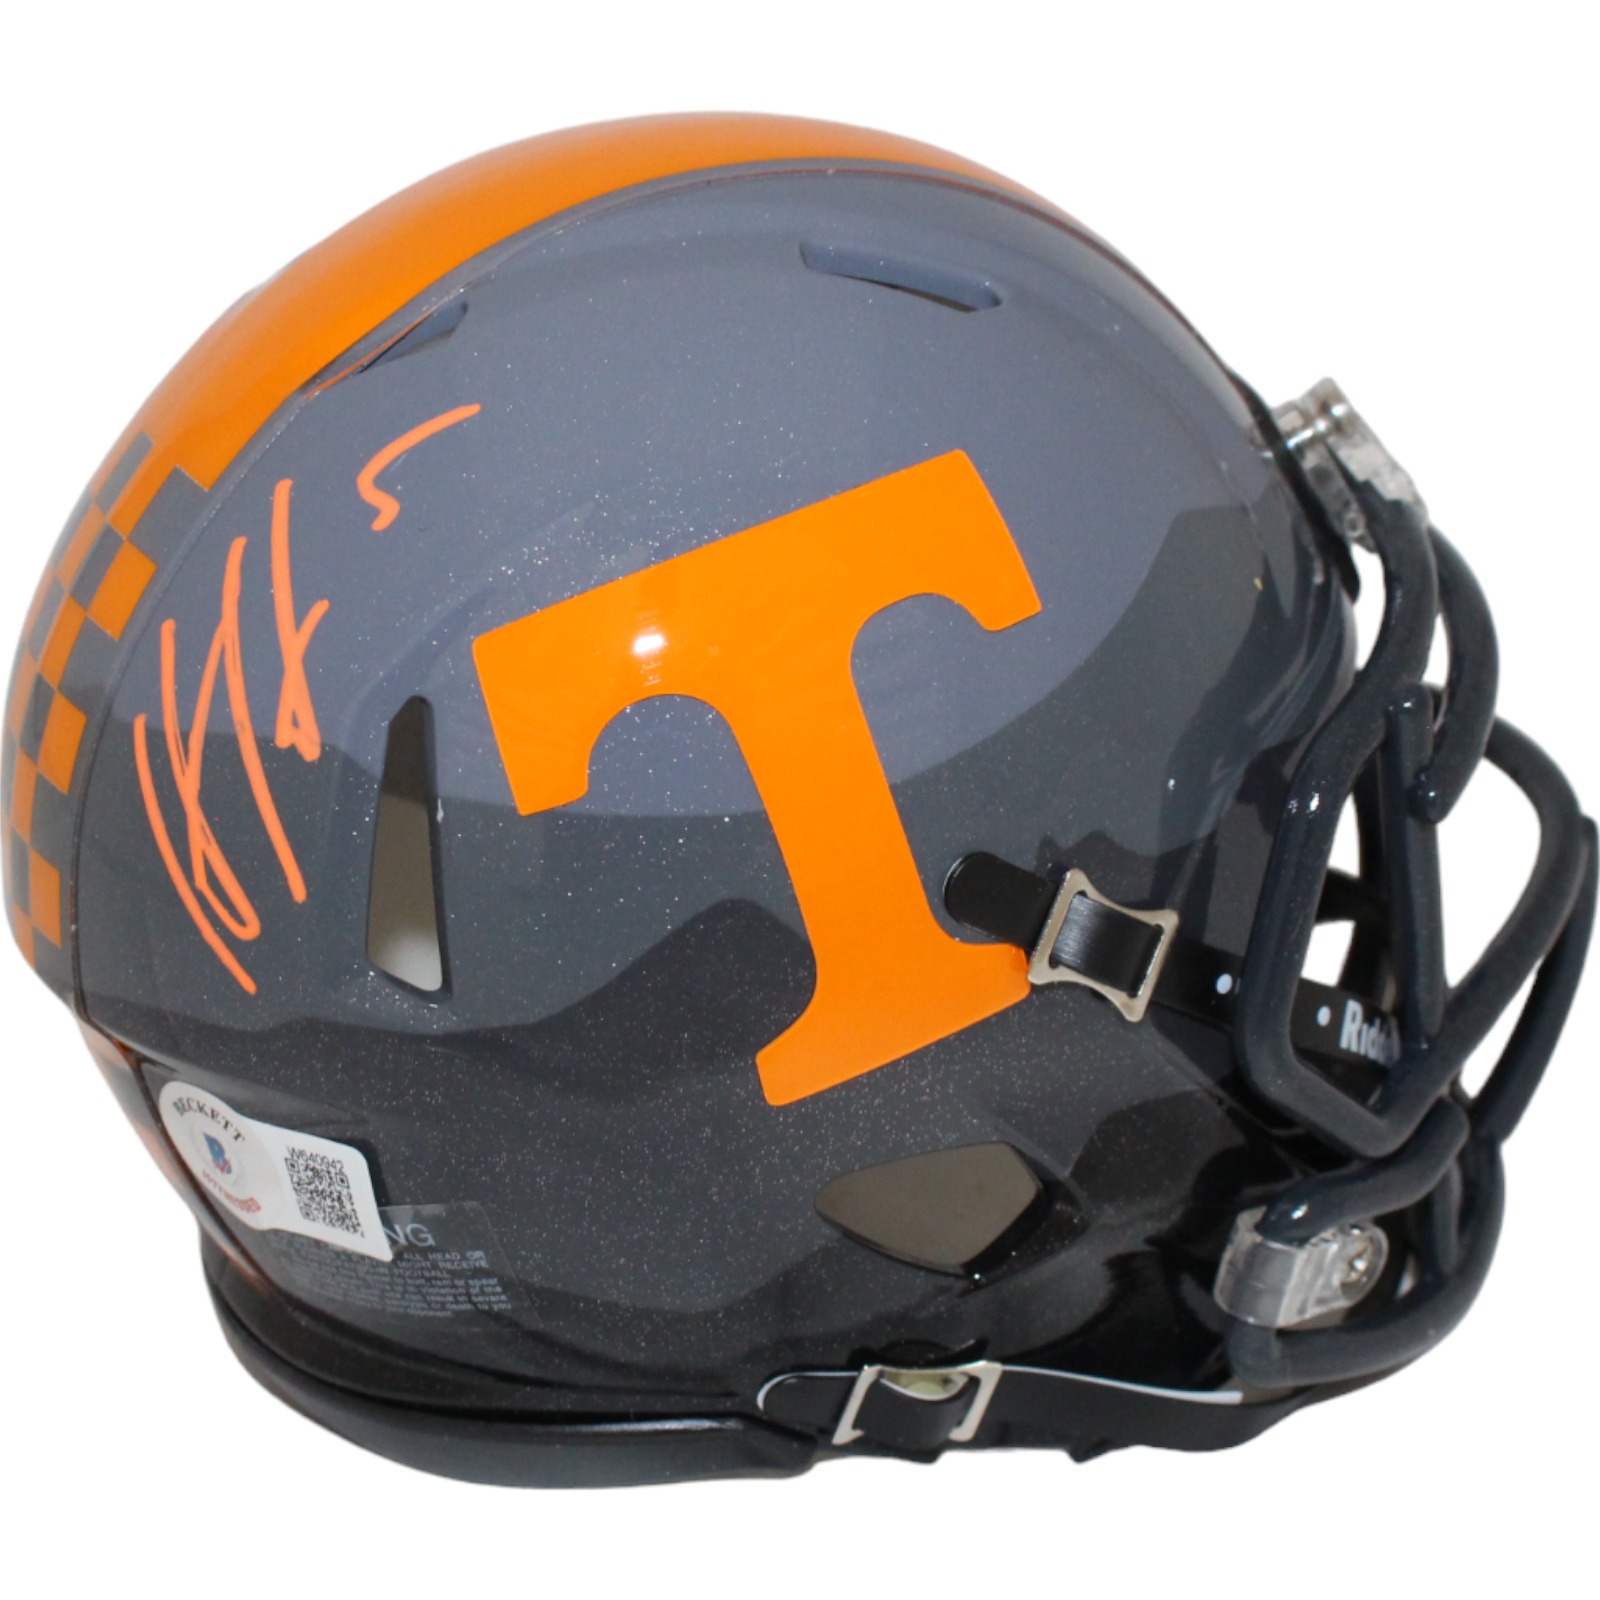 Hendon Hooker Signed Tennessee Voluneers Smoky Mini Helmet Beckett